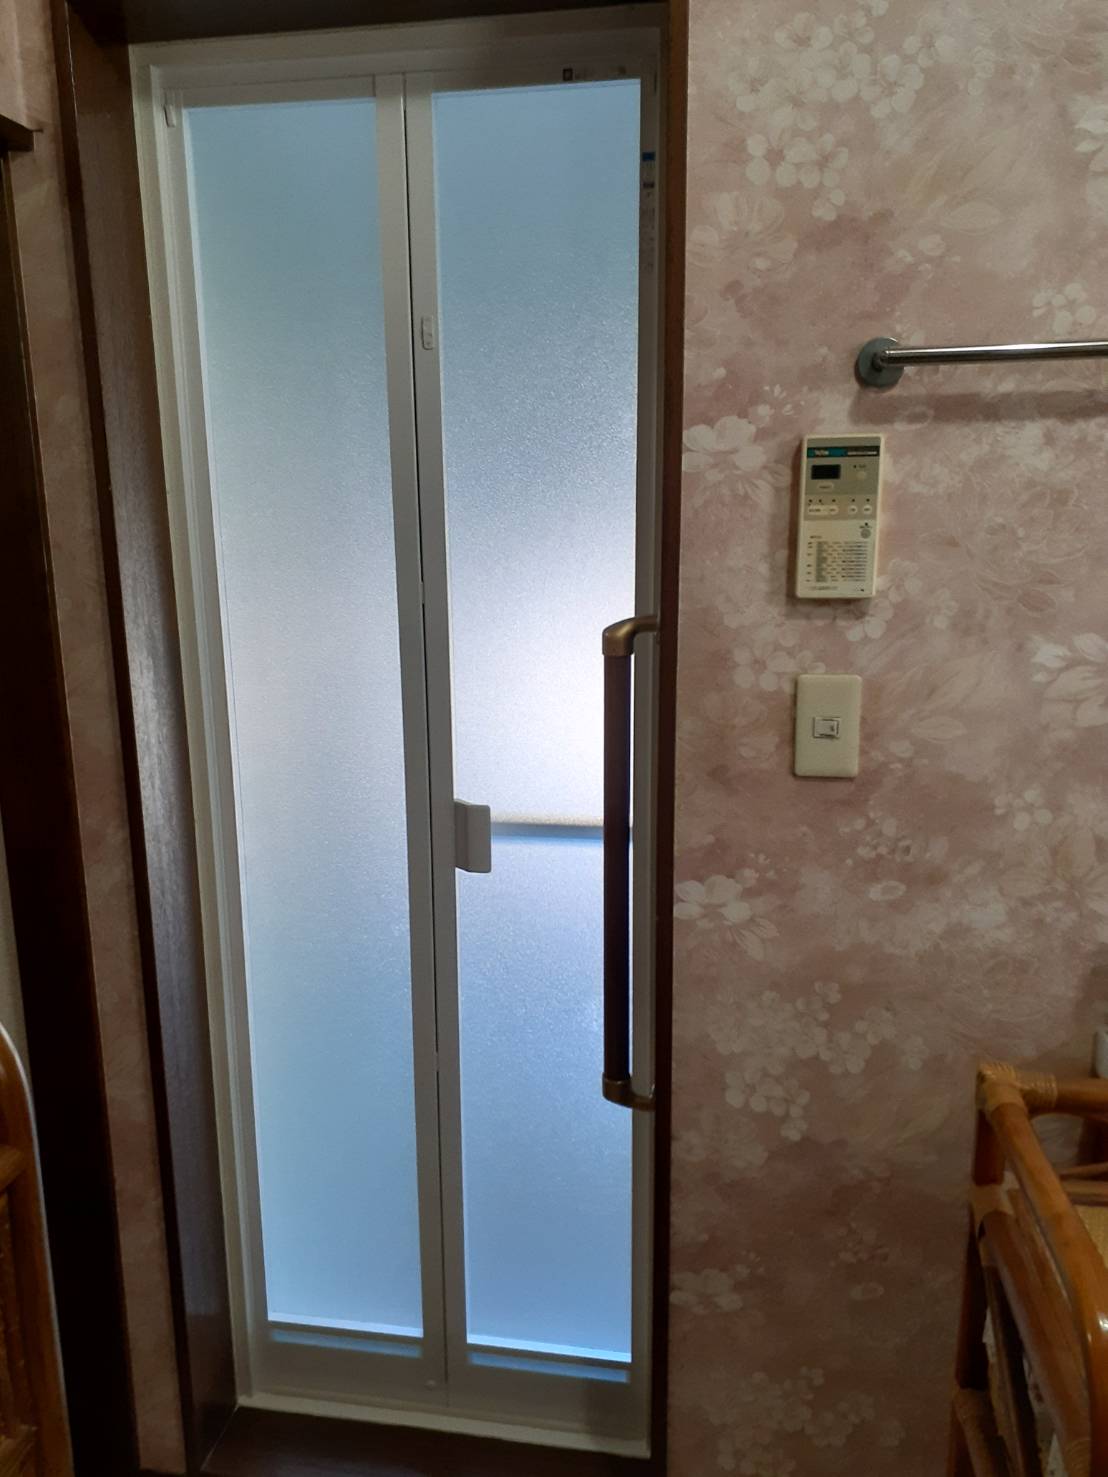 市原市辰巳台東で高齢者住宅に対応するため浴室ドアを折戸にカバー交換